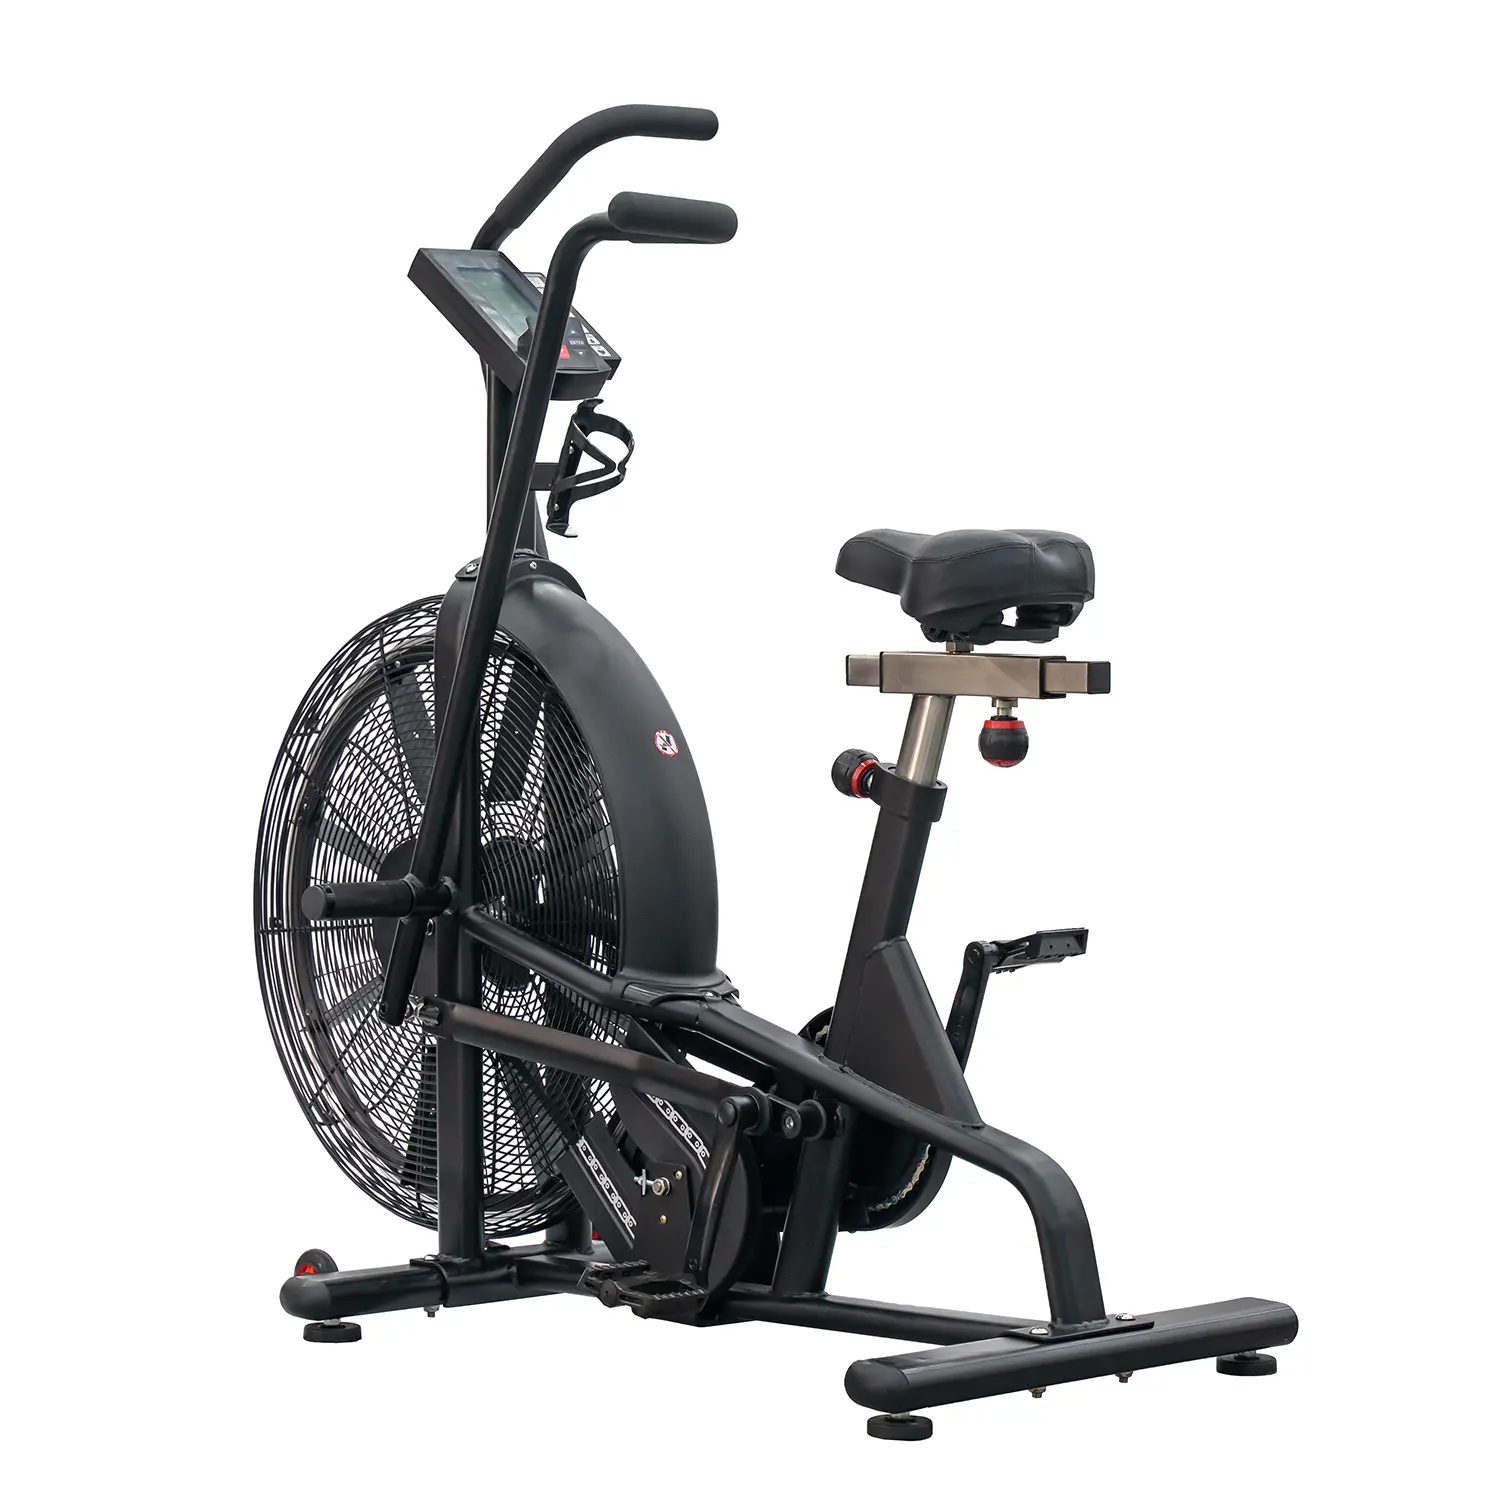 DETI commercial gym fitness cardio équipement filature intérieur exercice fit vélo résistance au vent air vélo gym cardio air vélo